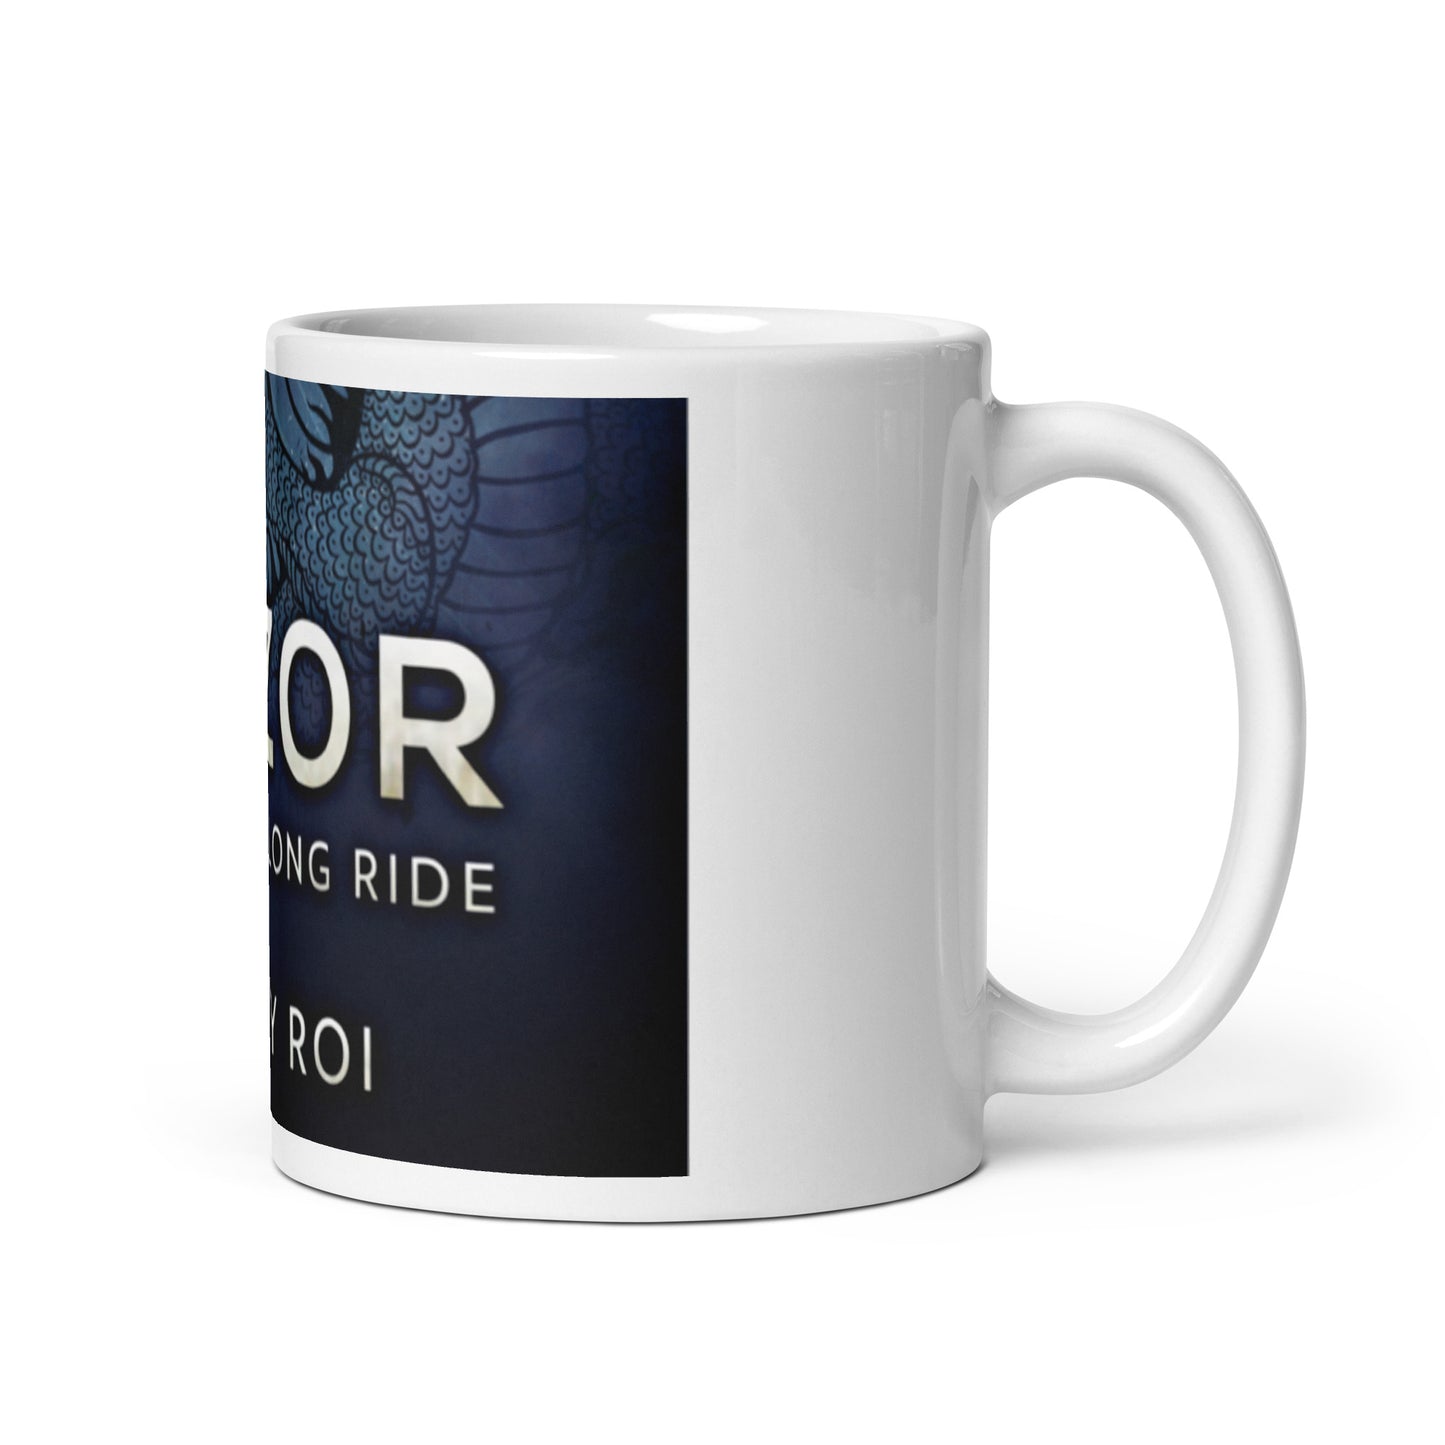 A Long Ride - White Coffee Mug